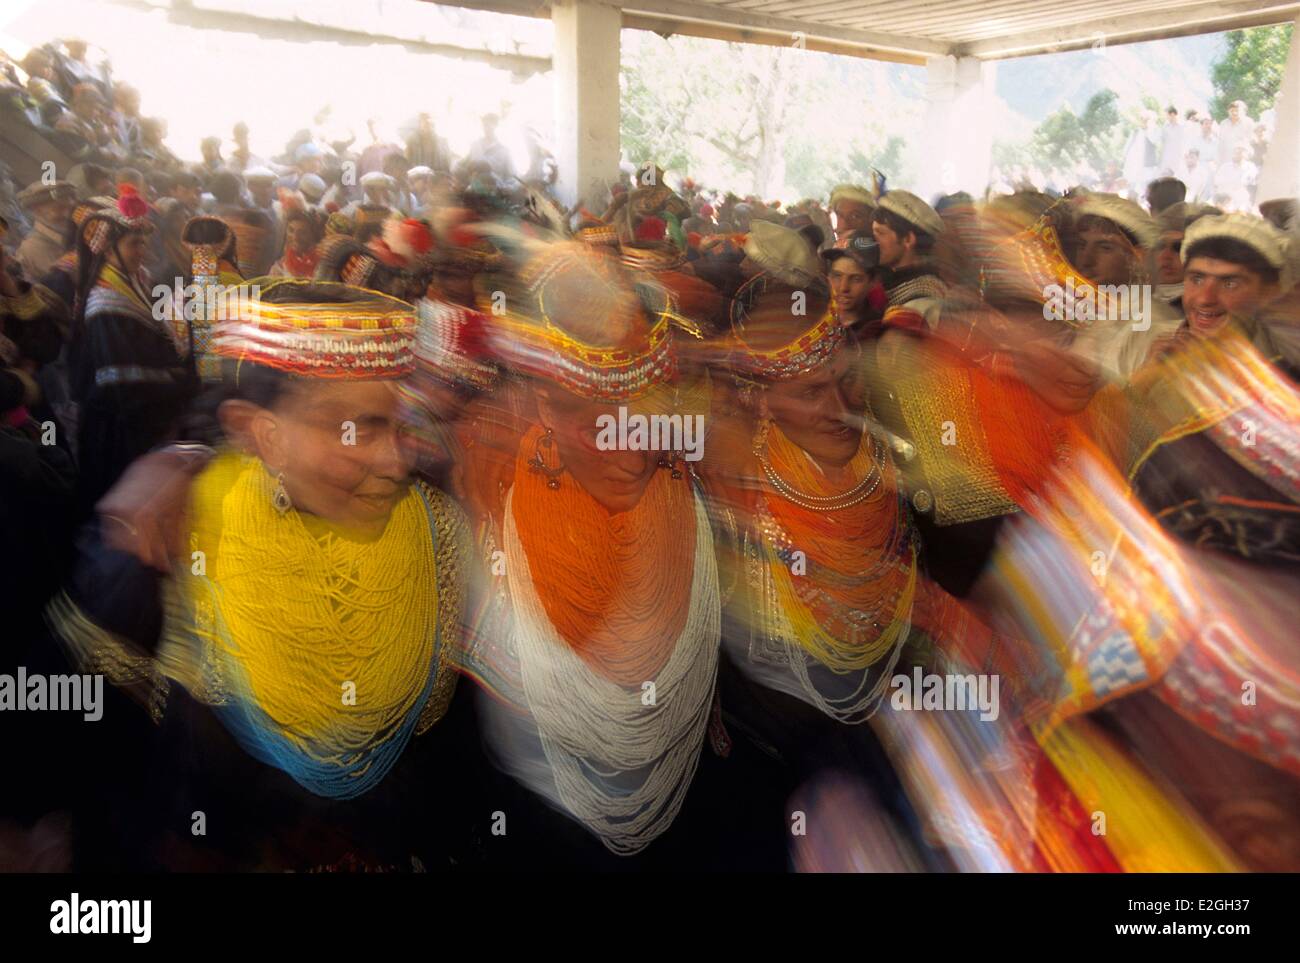 Vallées Kalash Khyber Pakhtunkhwa au Pakistan vallée Bumburet Batrik femmes Kalash village danser dans une transe collective dans ultimates heures de célébrations de Joshi spring festival deux jours de chants et danses dans la tradition Kalash unissant incantations Banque D'Images